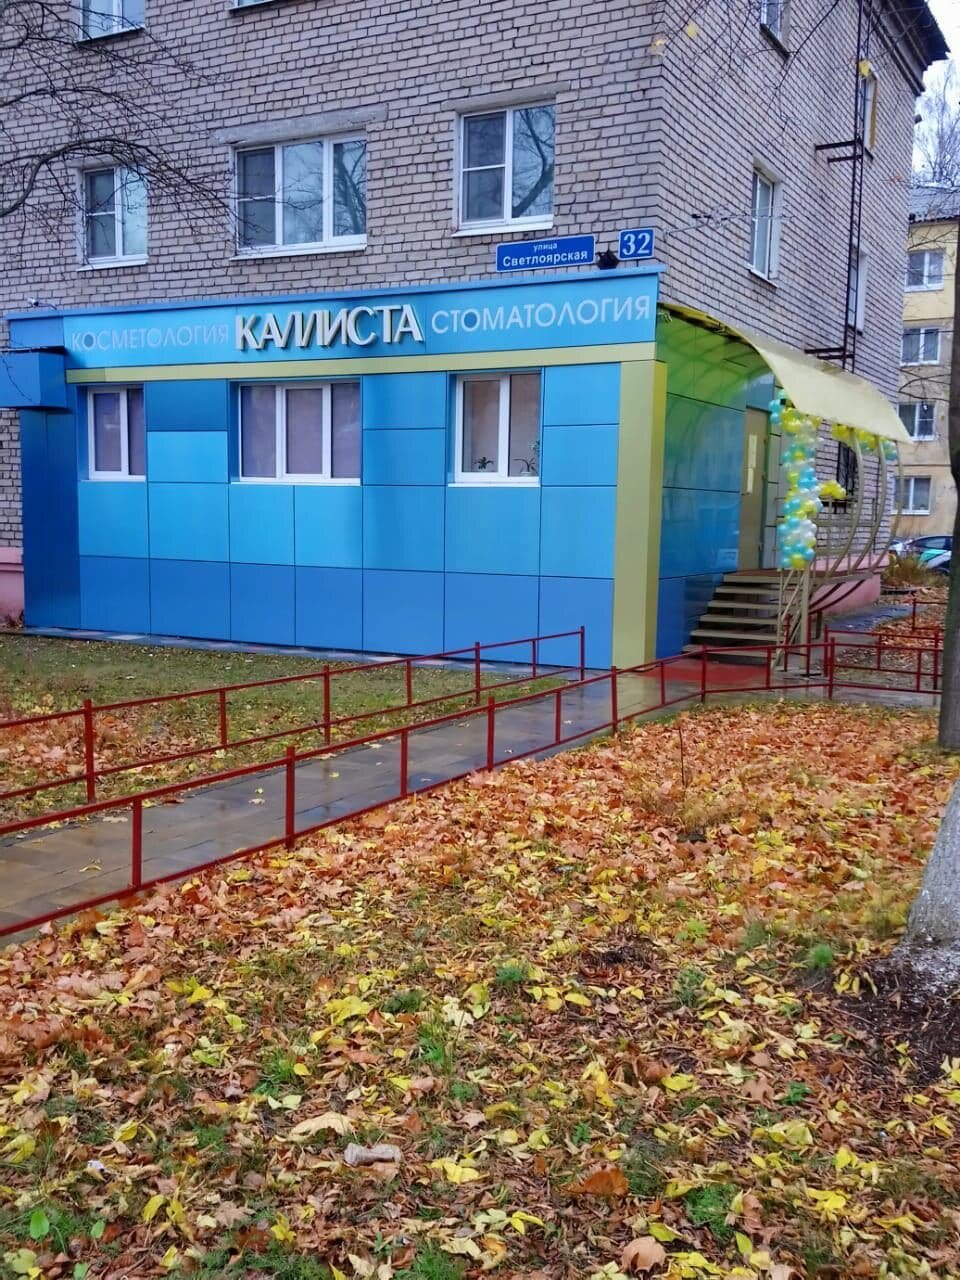 Стоматологическая клиника Каллиста, Нижний Новгород, ул. Светлоярская, 32